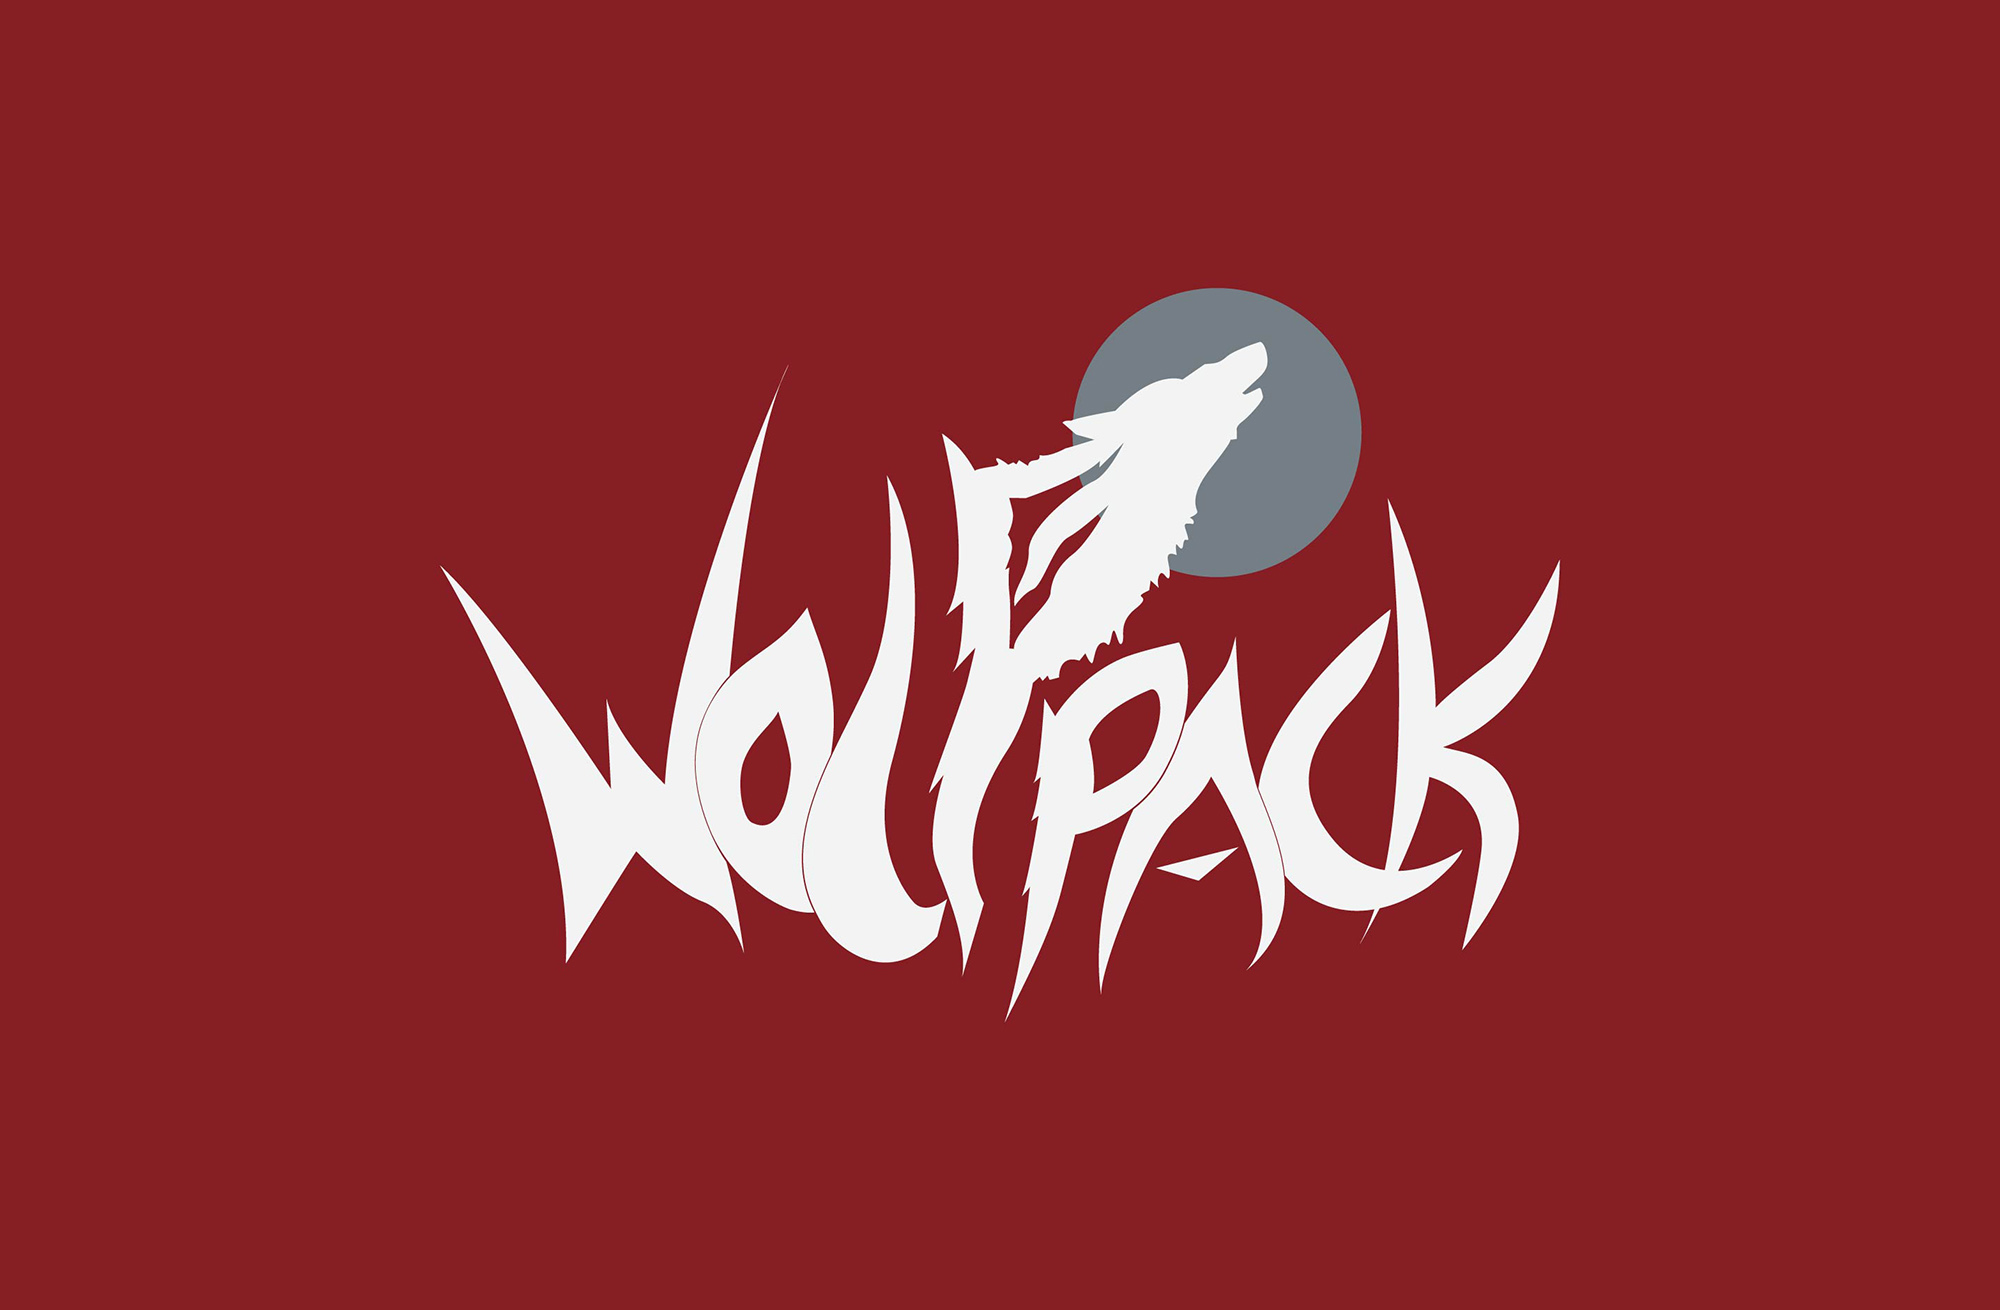 Download Wolfpack Logos